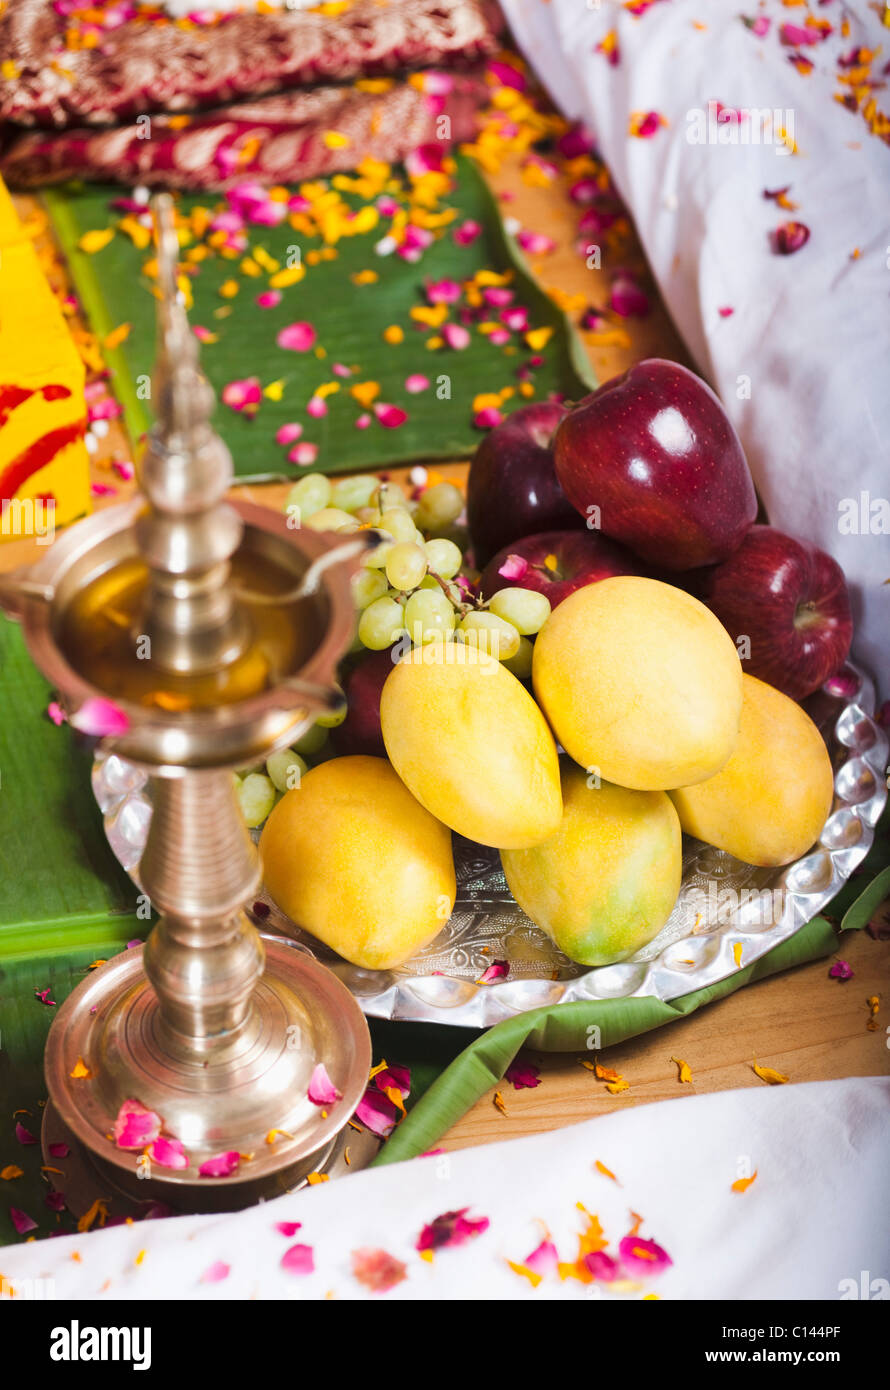 Lampe d'huile et de fruits à proximité d'un havan kund au cours de la cérémonie de mariage indien du Sud Banque D'Images